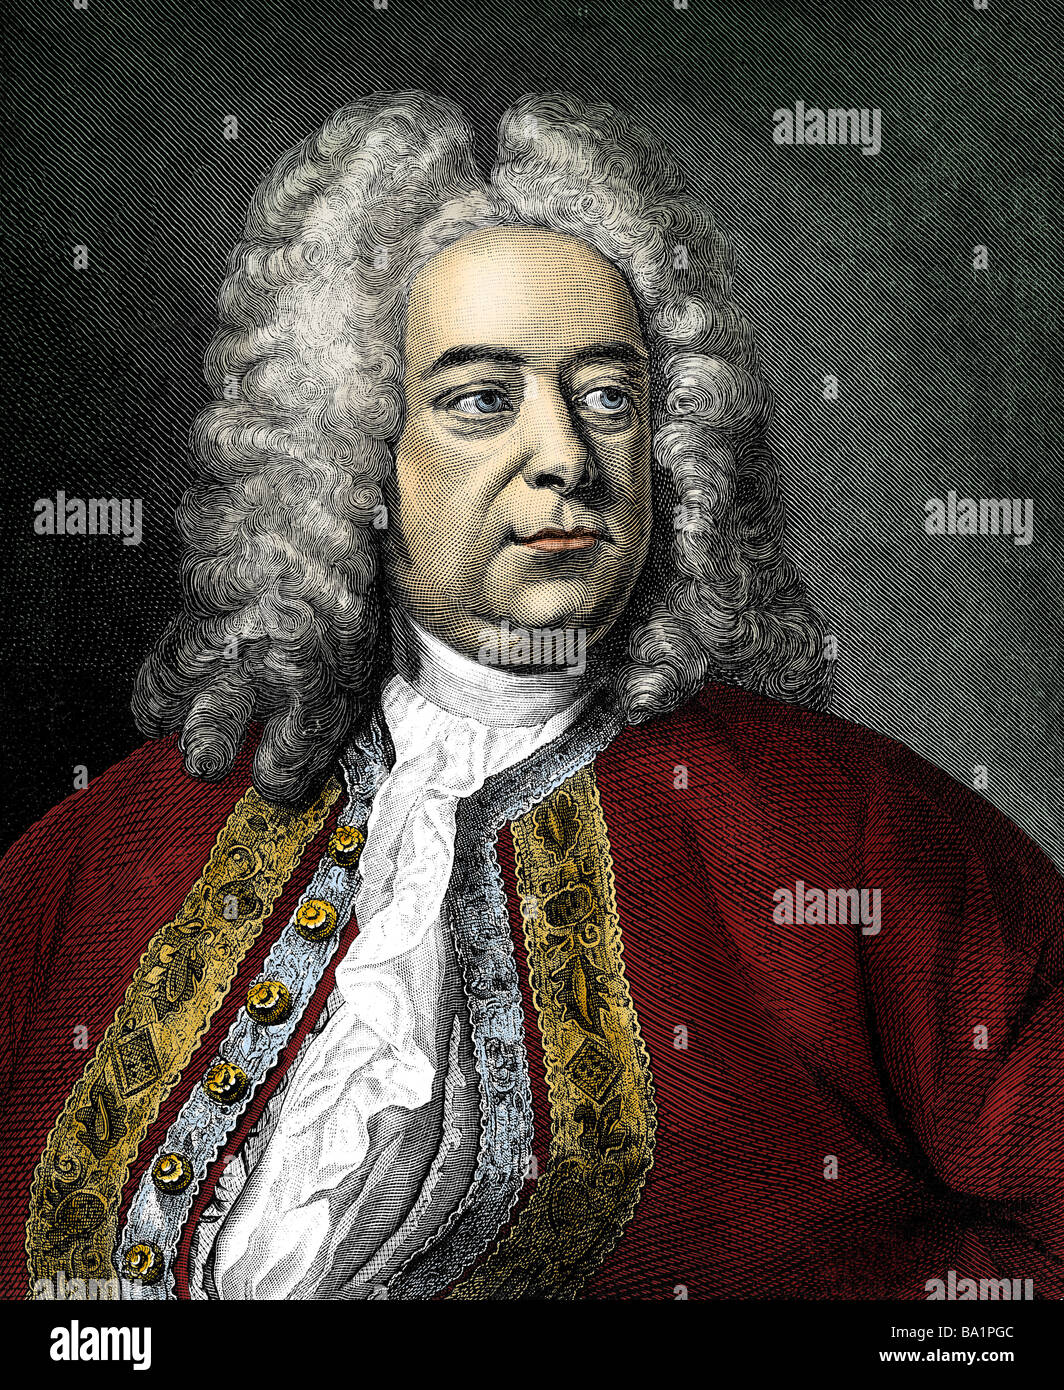 Händel, George Frederic, 23.2.1685 - 14.4.1759, compositor alemán, retrato, grabado en cobre, del siglo XVIII, posteriormente coloreados, mus Foto de stock